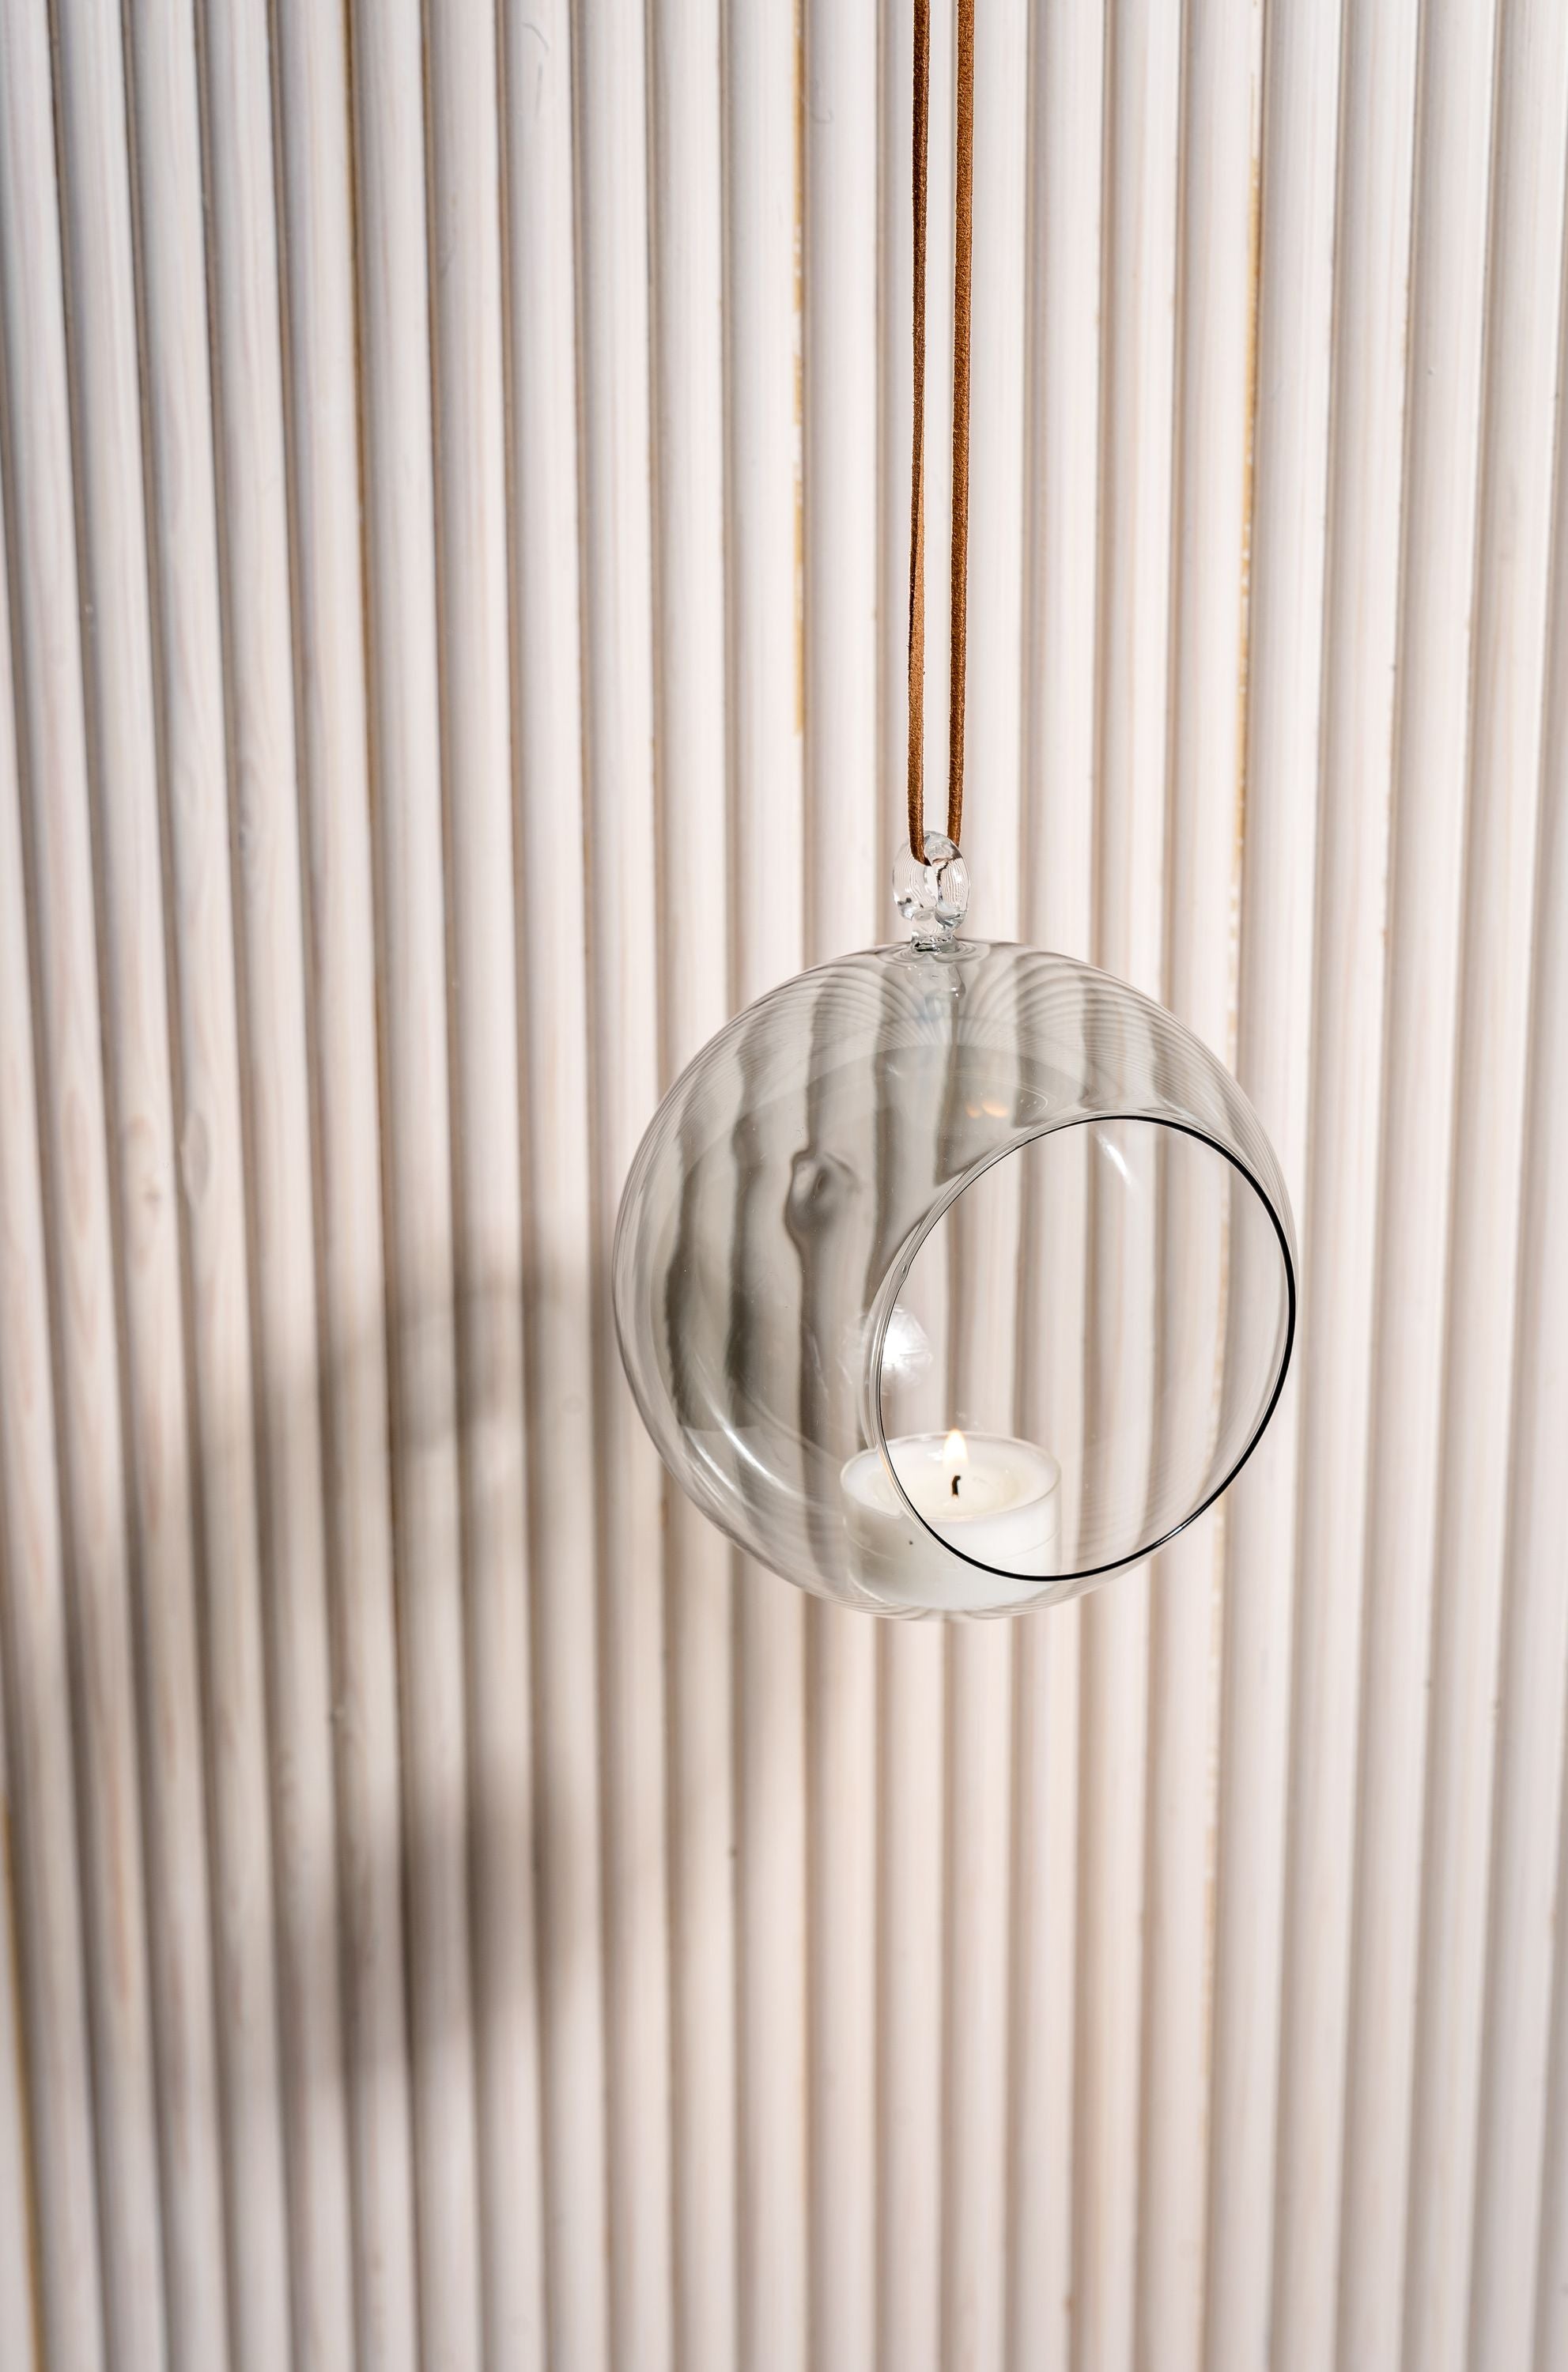 Bola de decoración de la bola de decoración de Muurla, transparente